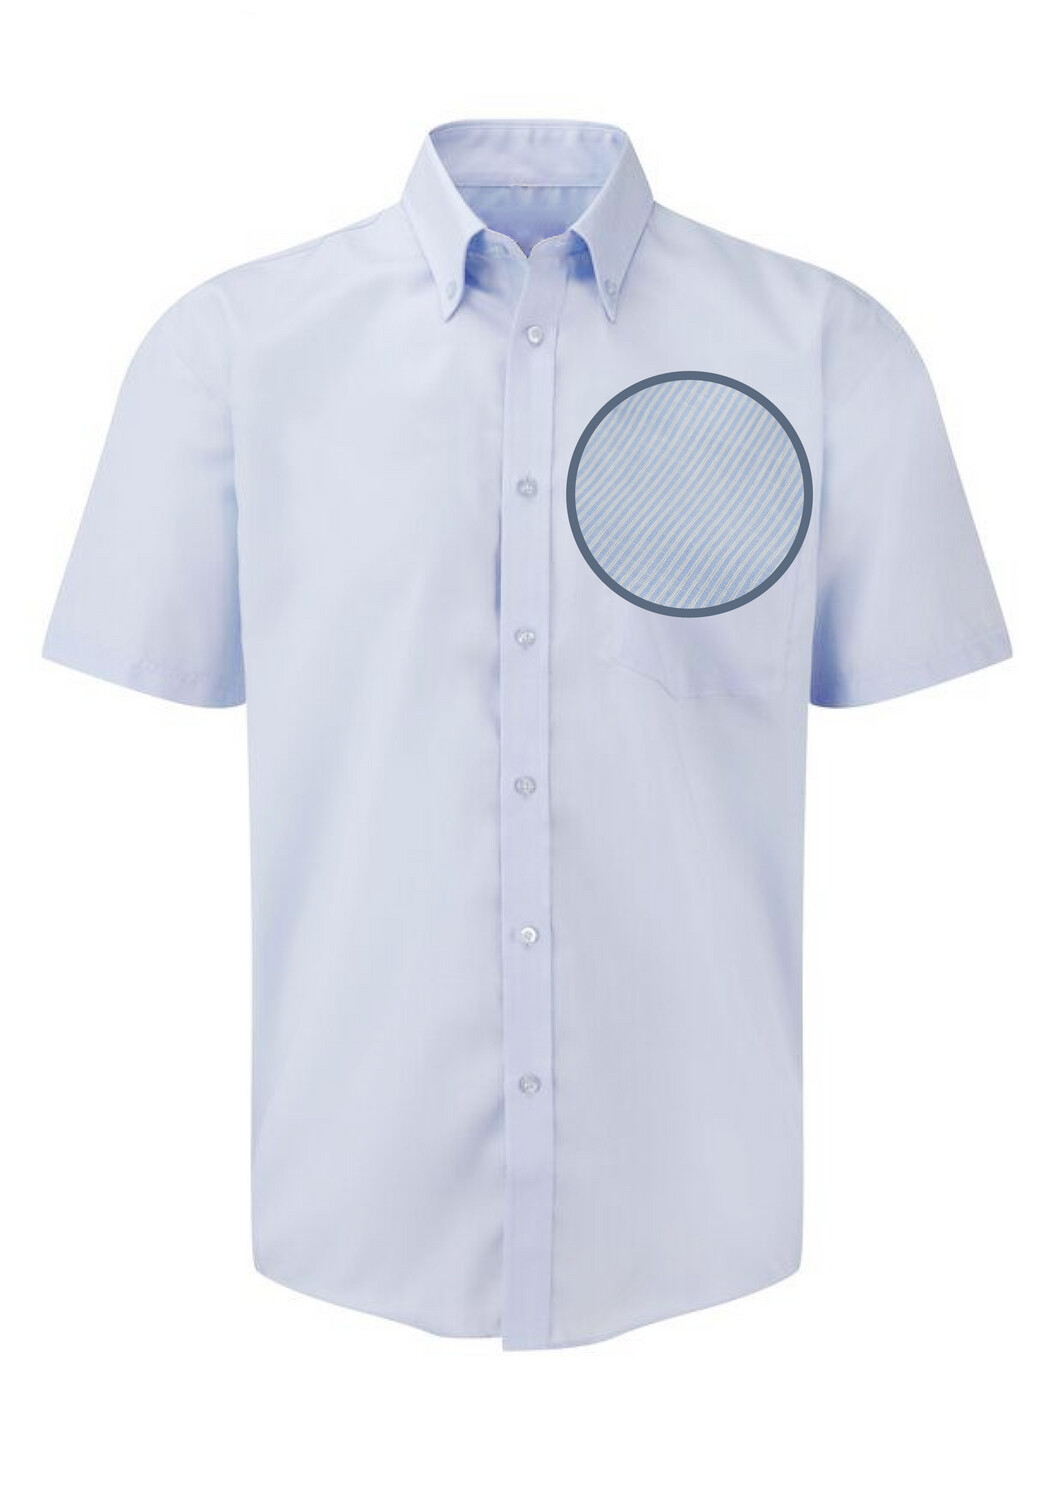 Jongenshemd wit/blauw gestreept met korte mouwen